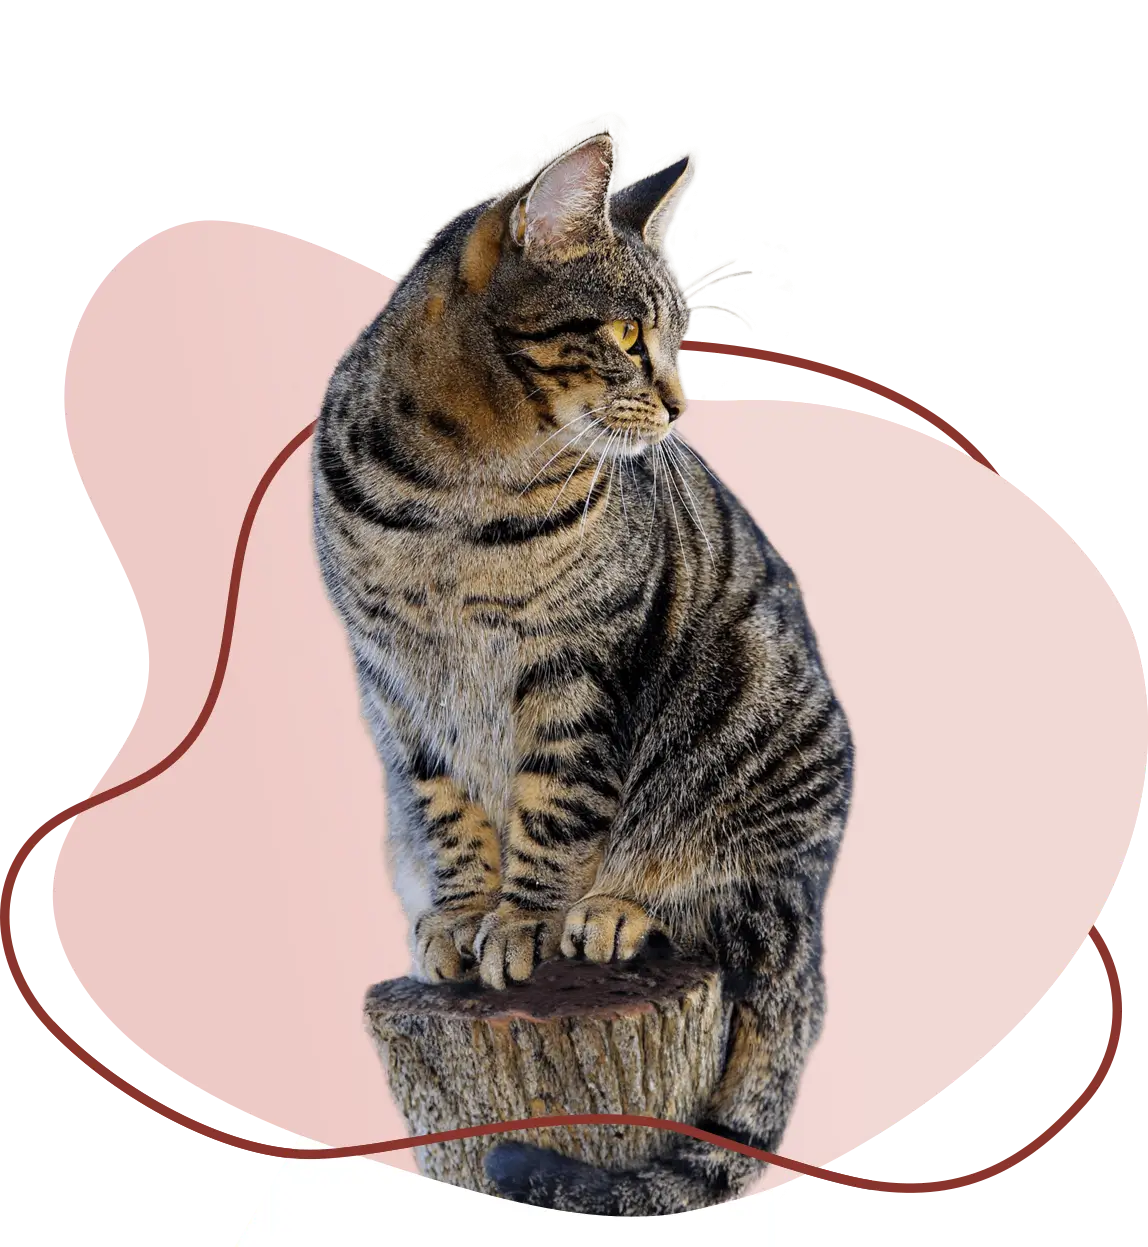 Bild von einer Katze vor einem pinken Hintergrund.